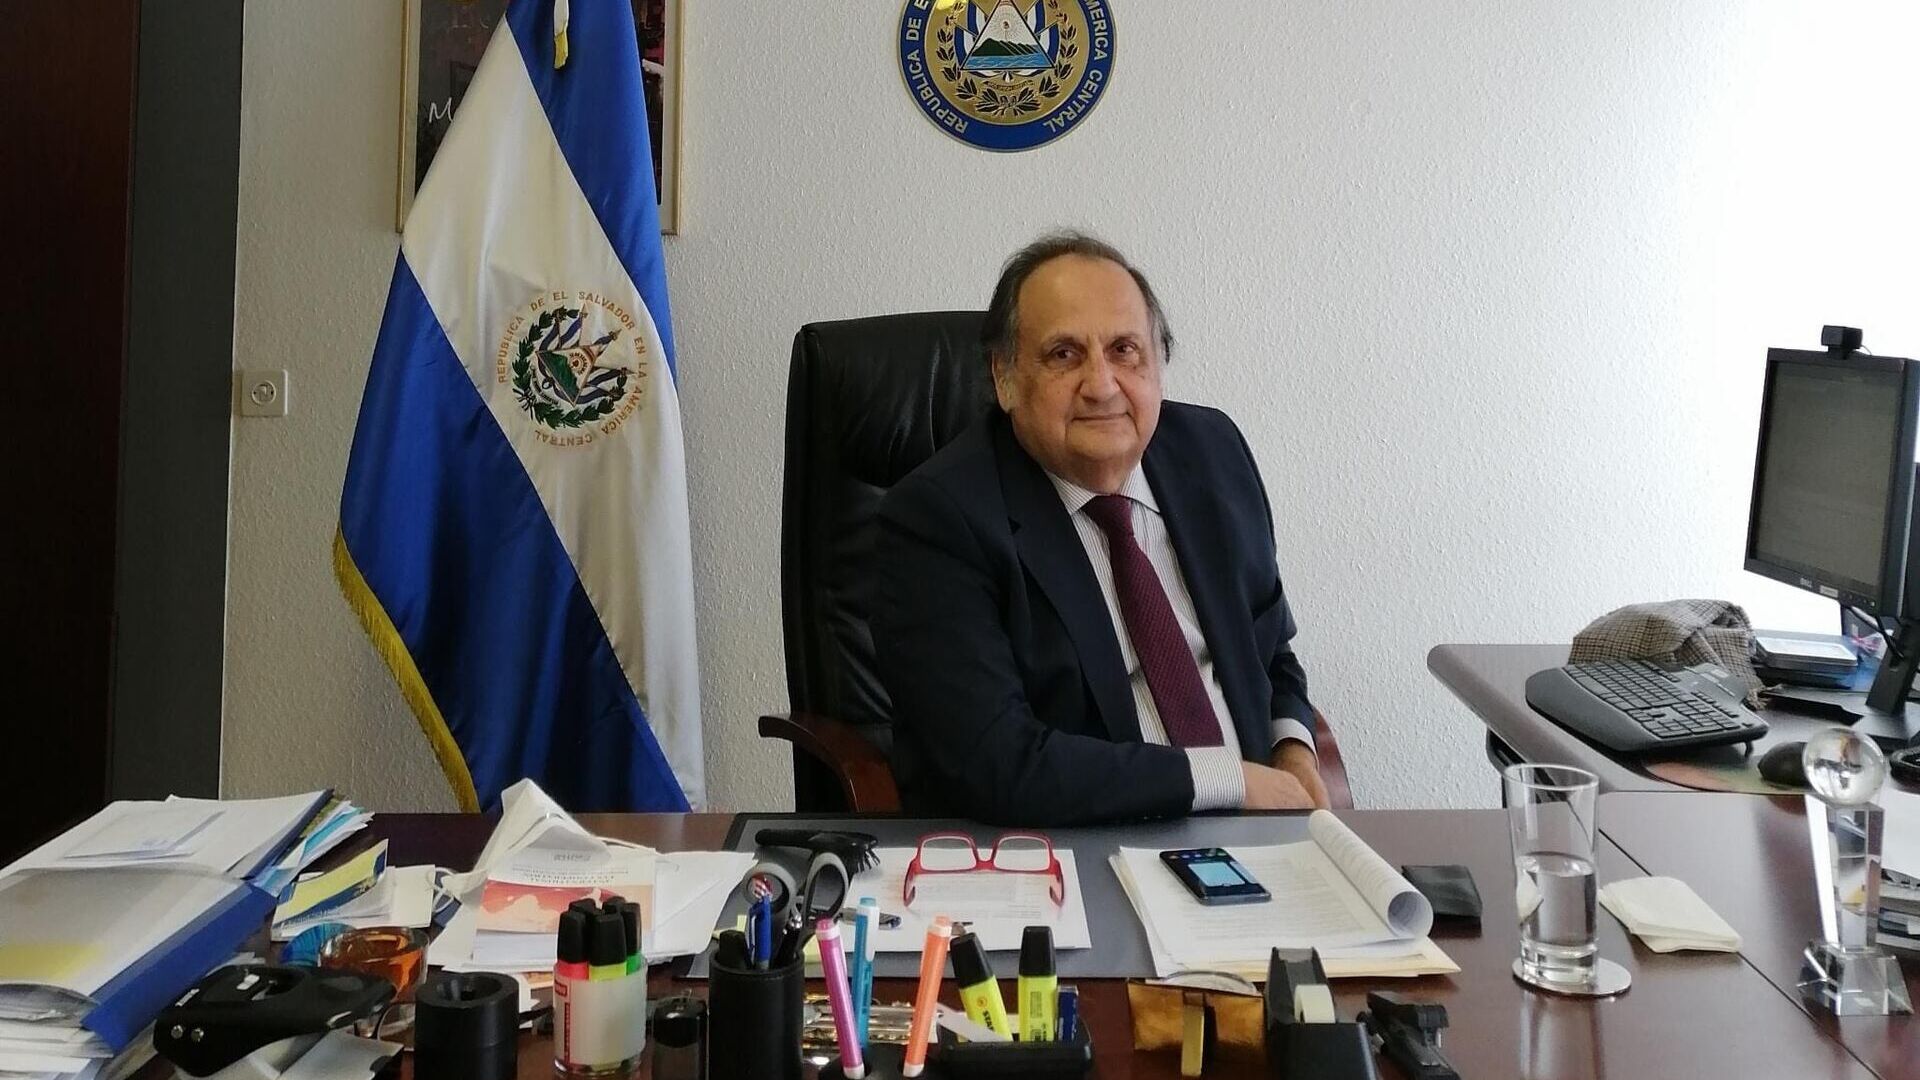 خواكين ألكسندر مازا مارتيلي هو سفير البعثة الدائمة لجمهورية السلفادور لدى مكتب الأمم المتحدة في جنيف.